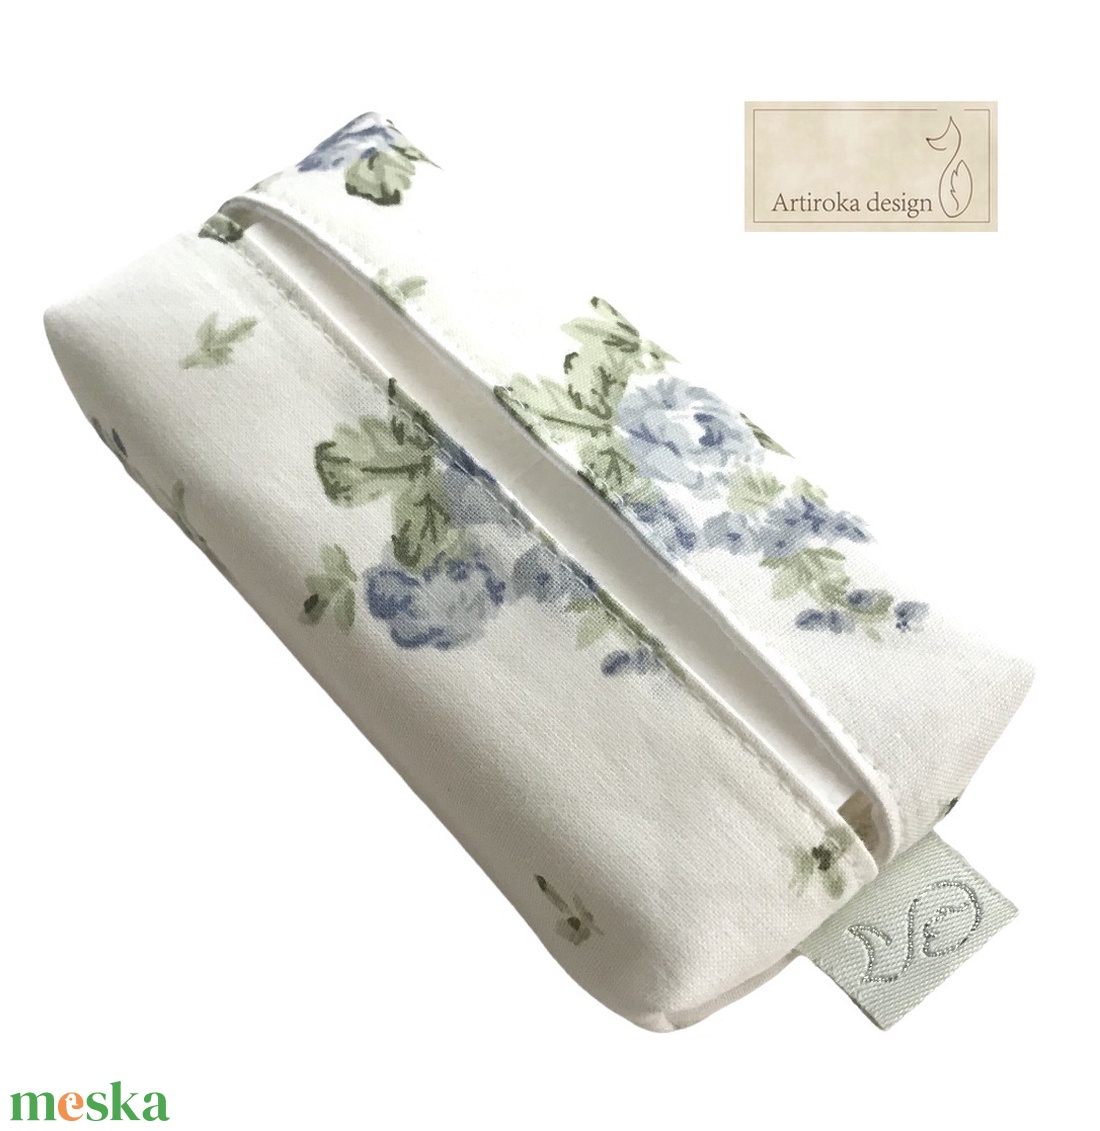 Kék - fehér rózsa mintás pamut textilből készült papírzsebkendő tartó- Artiroka design - táska & tok - pénztárca & más tok - zsebkendőtartó tok - Meska.hu